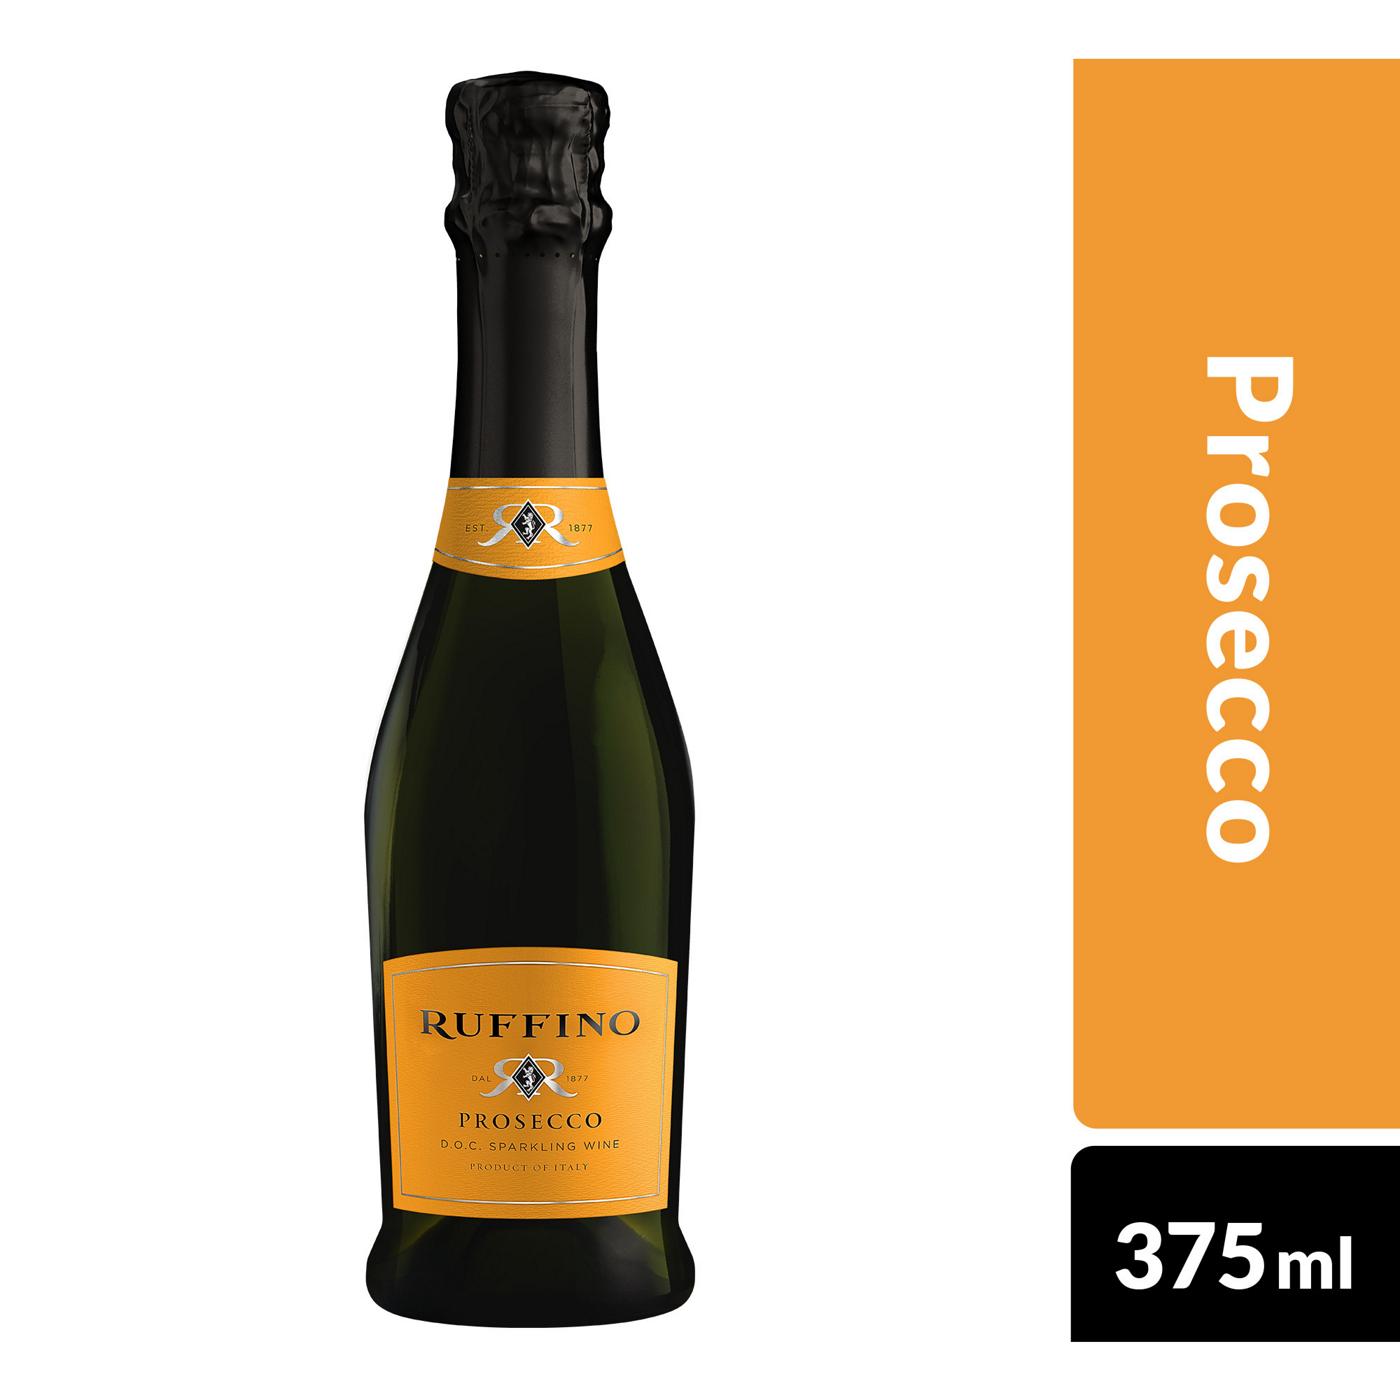 Ruffino Prosecco Doc Italian White Sparkling Wine - 375ml Half